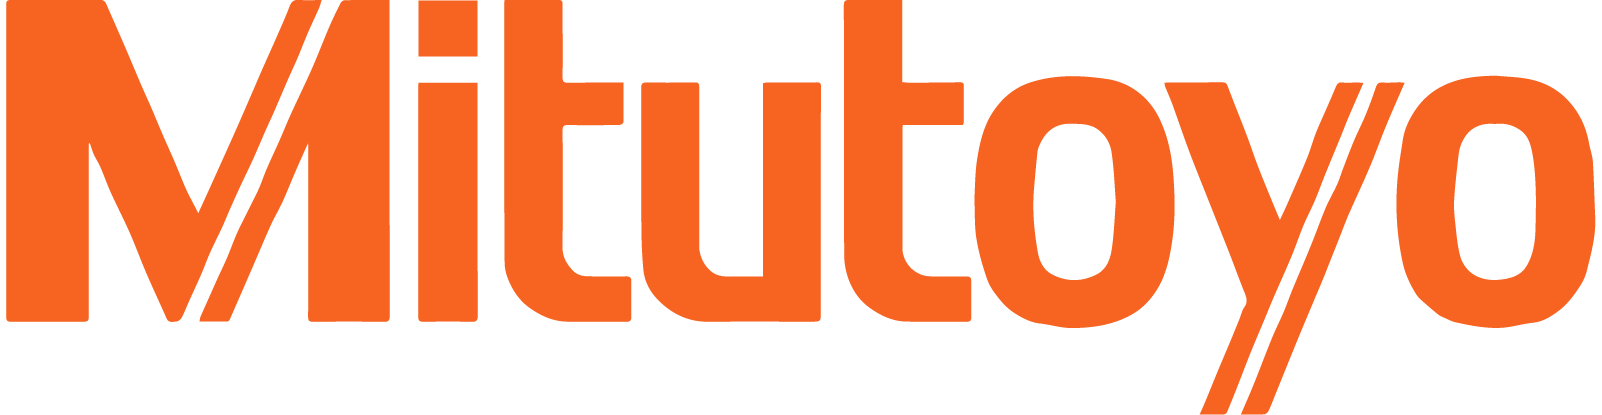 Mitutoya-Logo-SMT-01